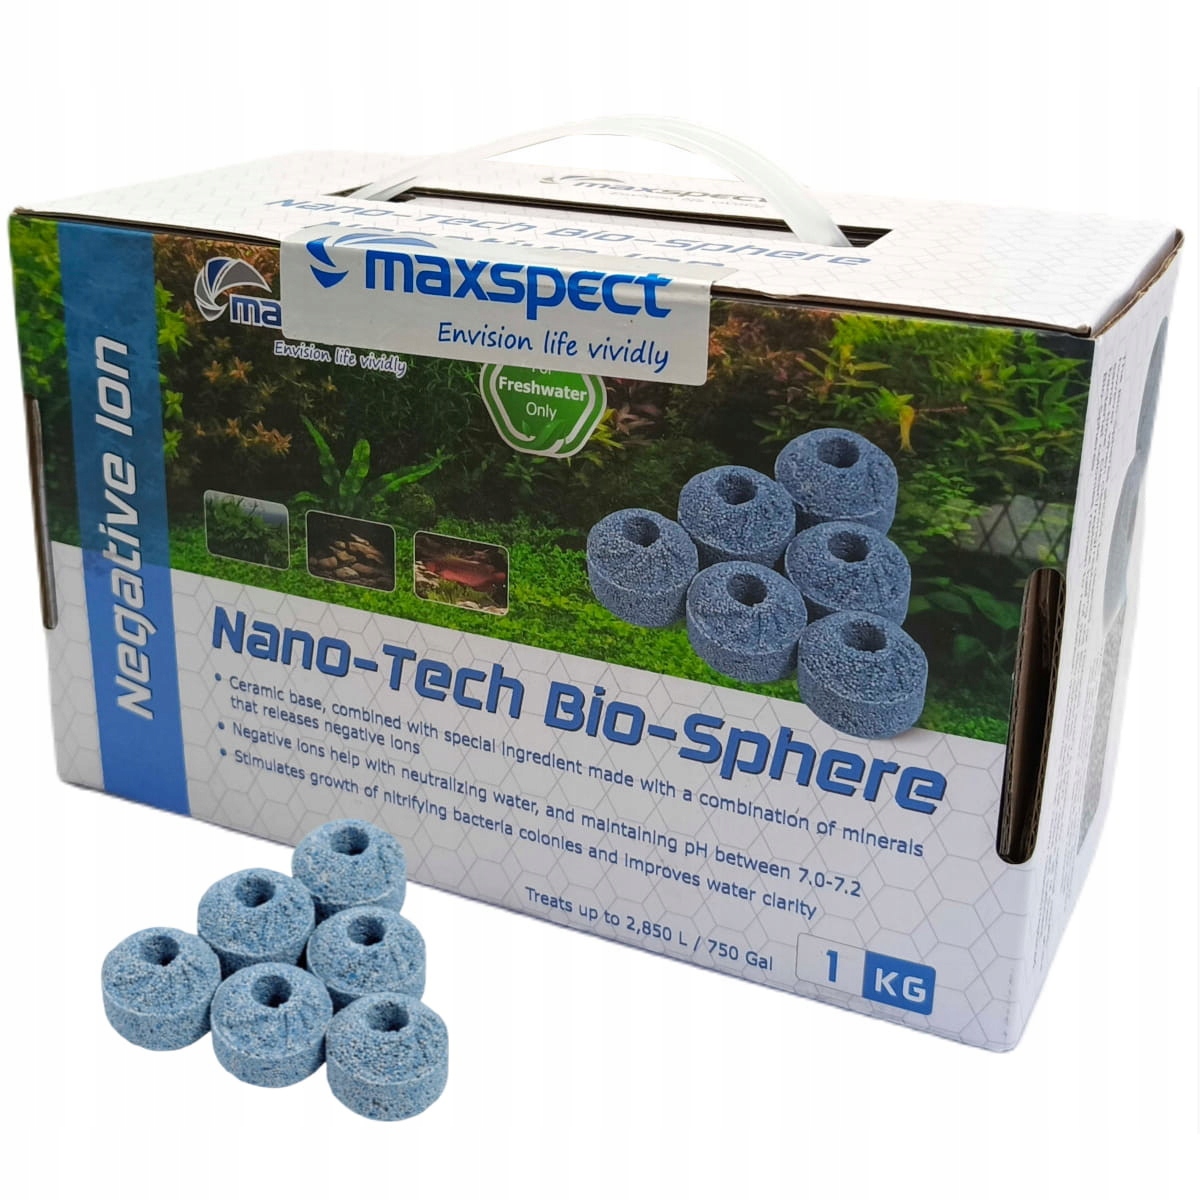 Maxspect Nano-Tech Bio-Sphere Negative Ion 1kg Biologická vložka do filtru